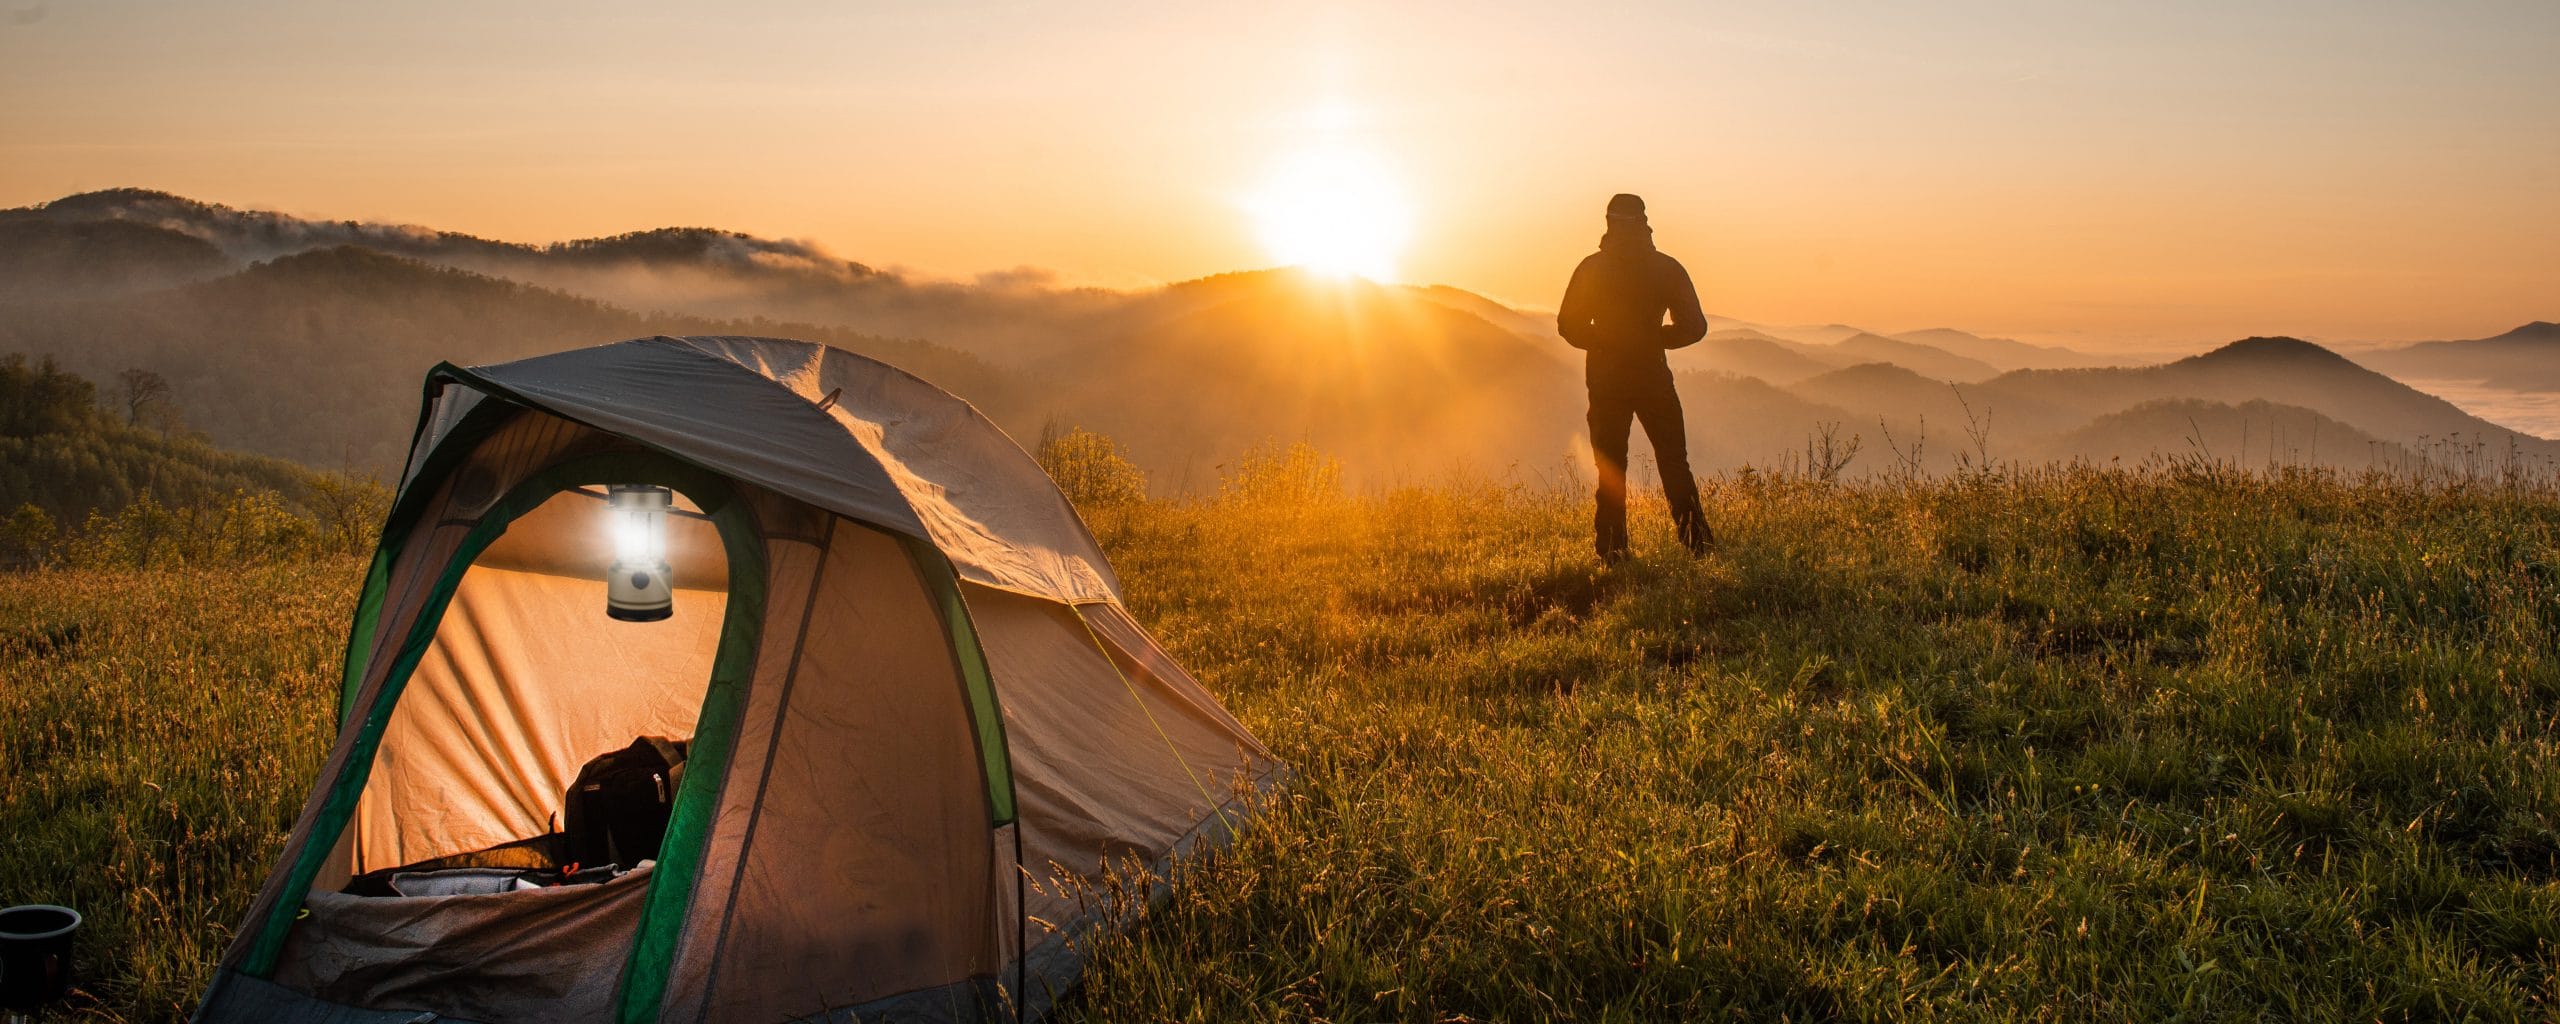 Mann sieht sich einen Sonnenaufgang an, in seinem Zelt leuchtet eine Laterne